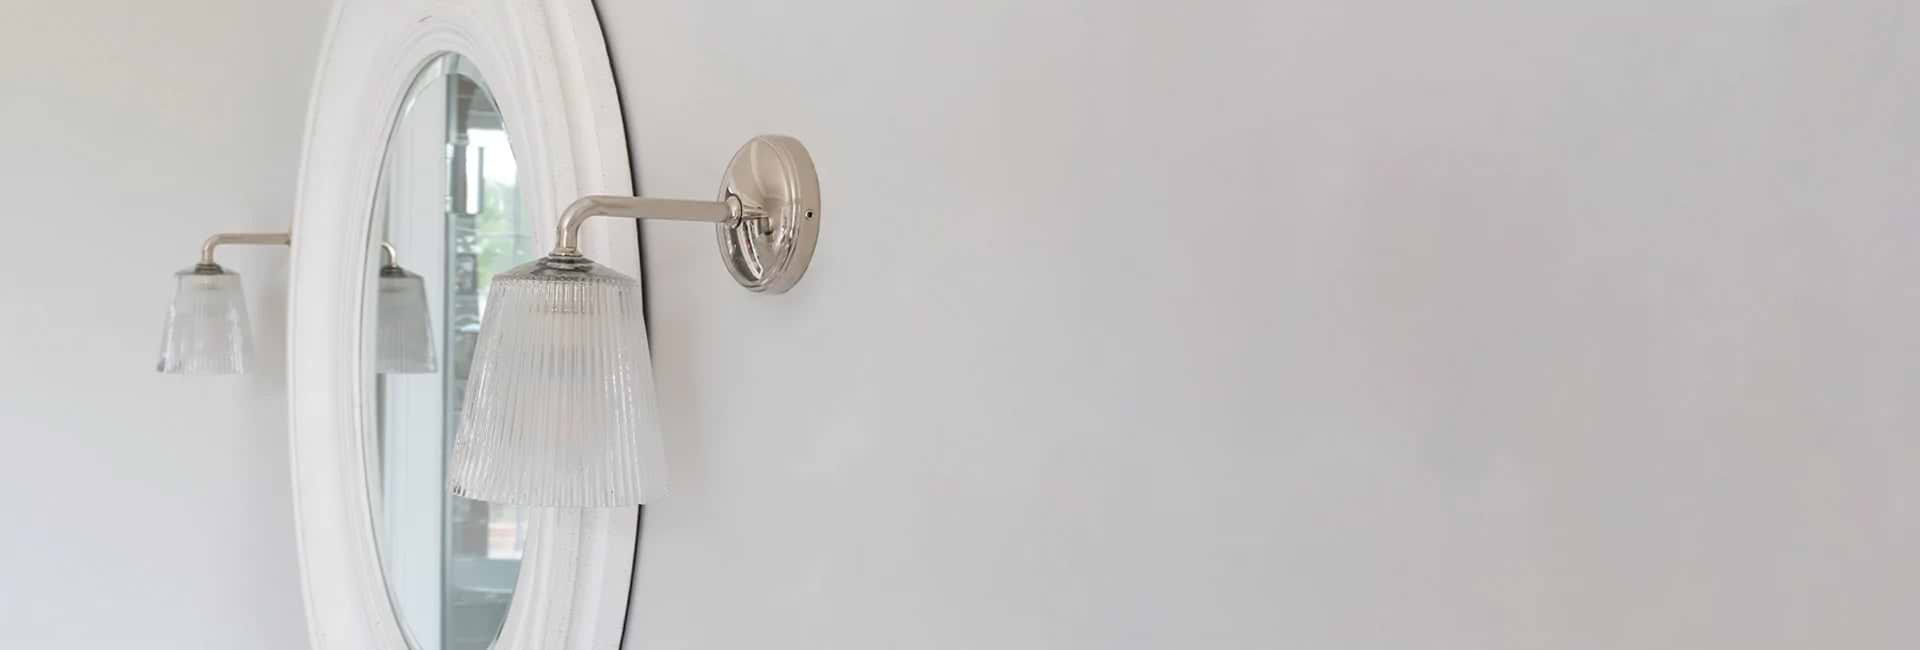 Zwei Wandleuchten Poliertes Nickel an einer weißen Wand links und rechts von einem Badezimmerspiegel